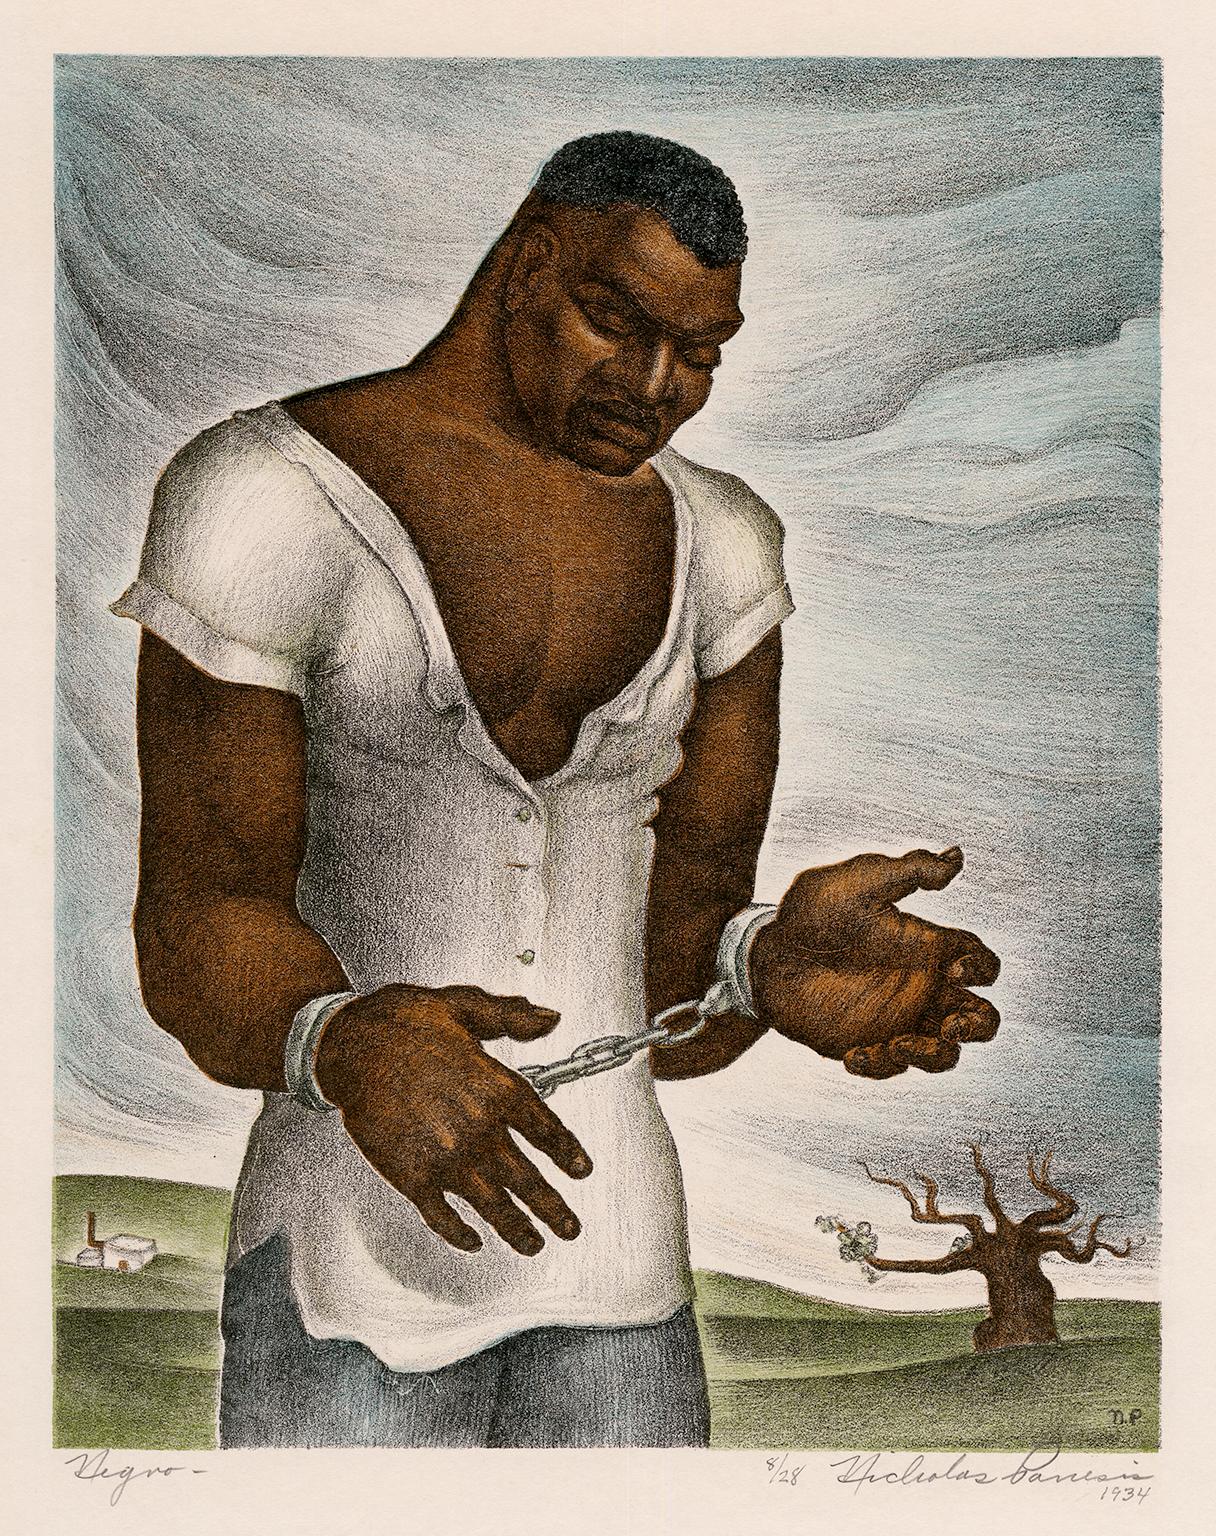 Nègre - Californie WPA, années 1930 Réalisme social - Sujet afro-américain